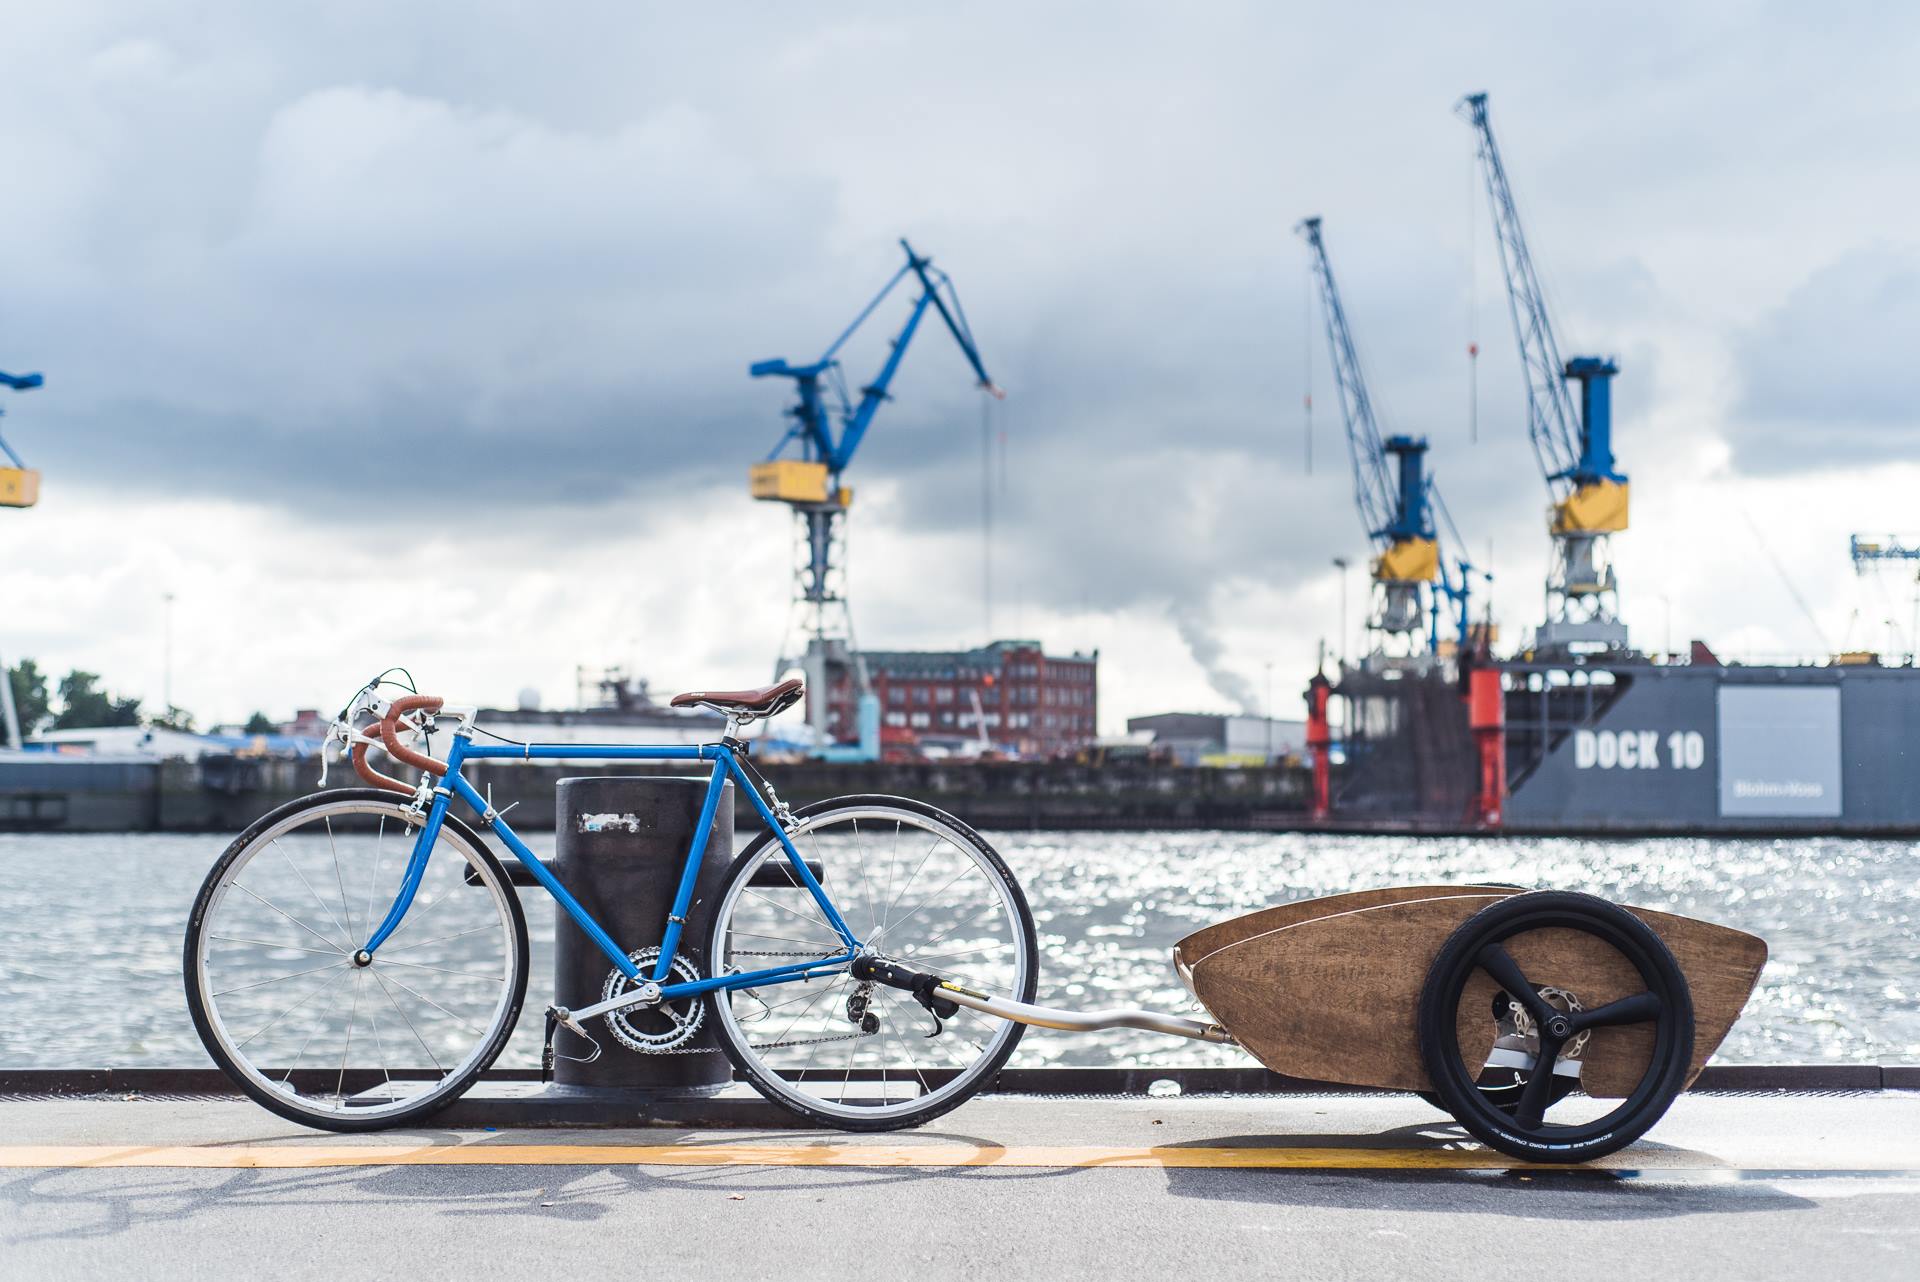 Nüwiel macht ein Fahrrad mit einem Klick zum CargoFlitzer